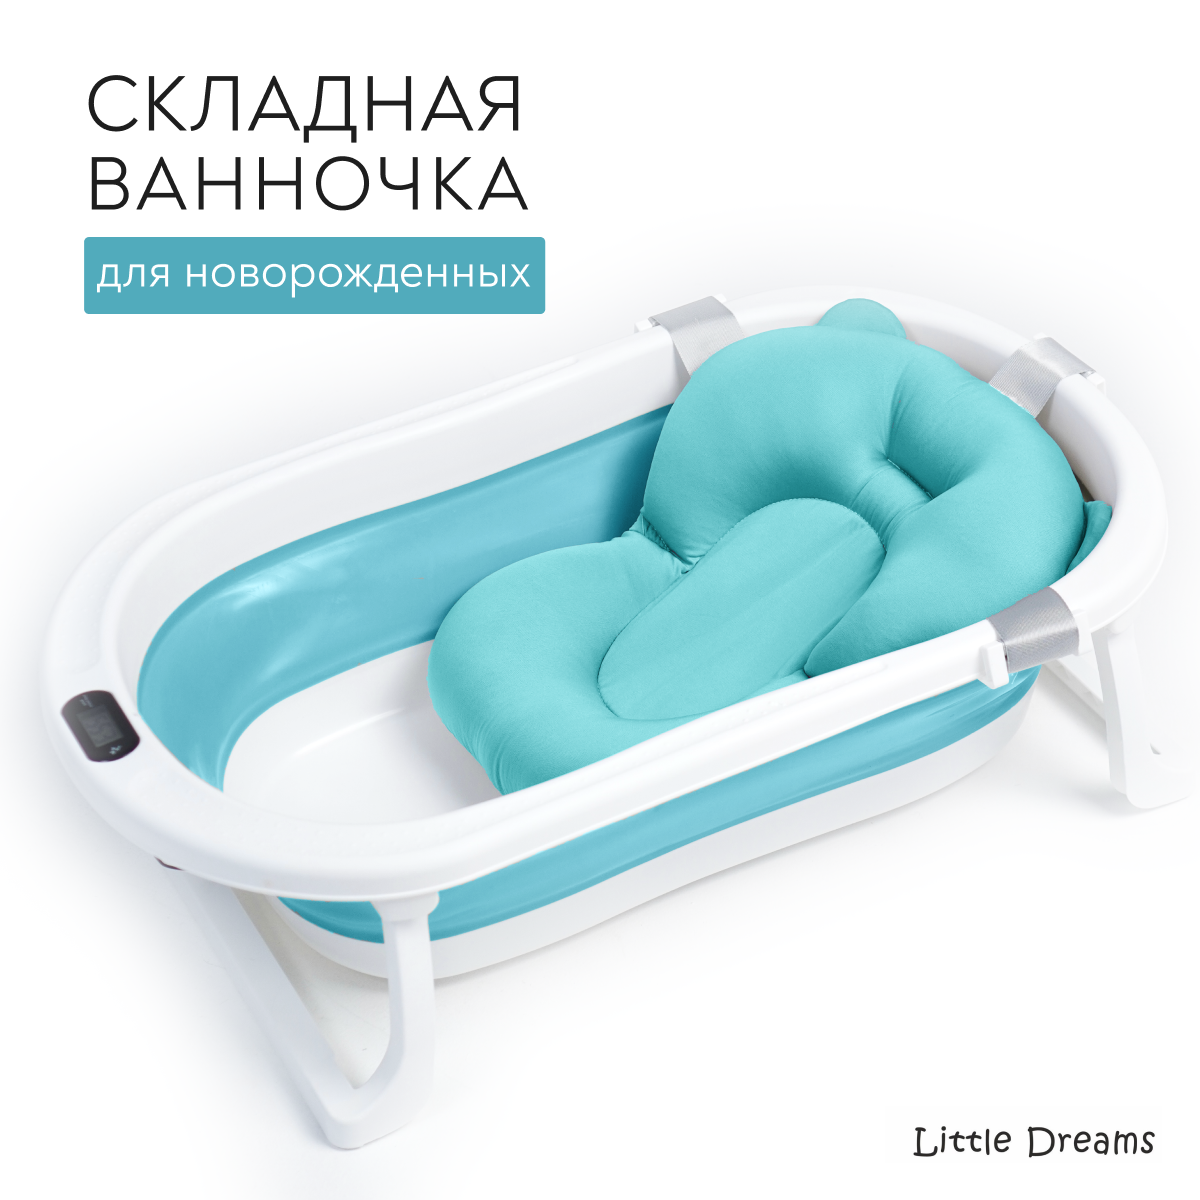 Ванночка для купания новорожденных Little Dreams складная, голубая